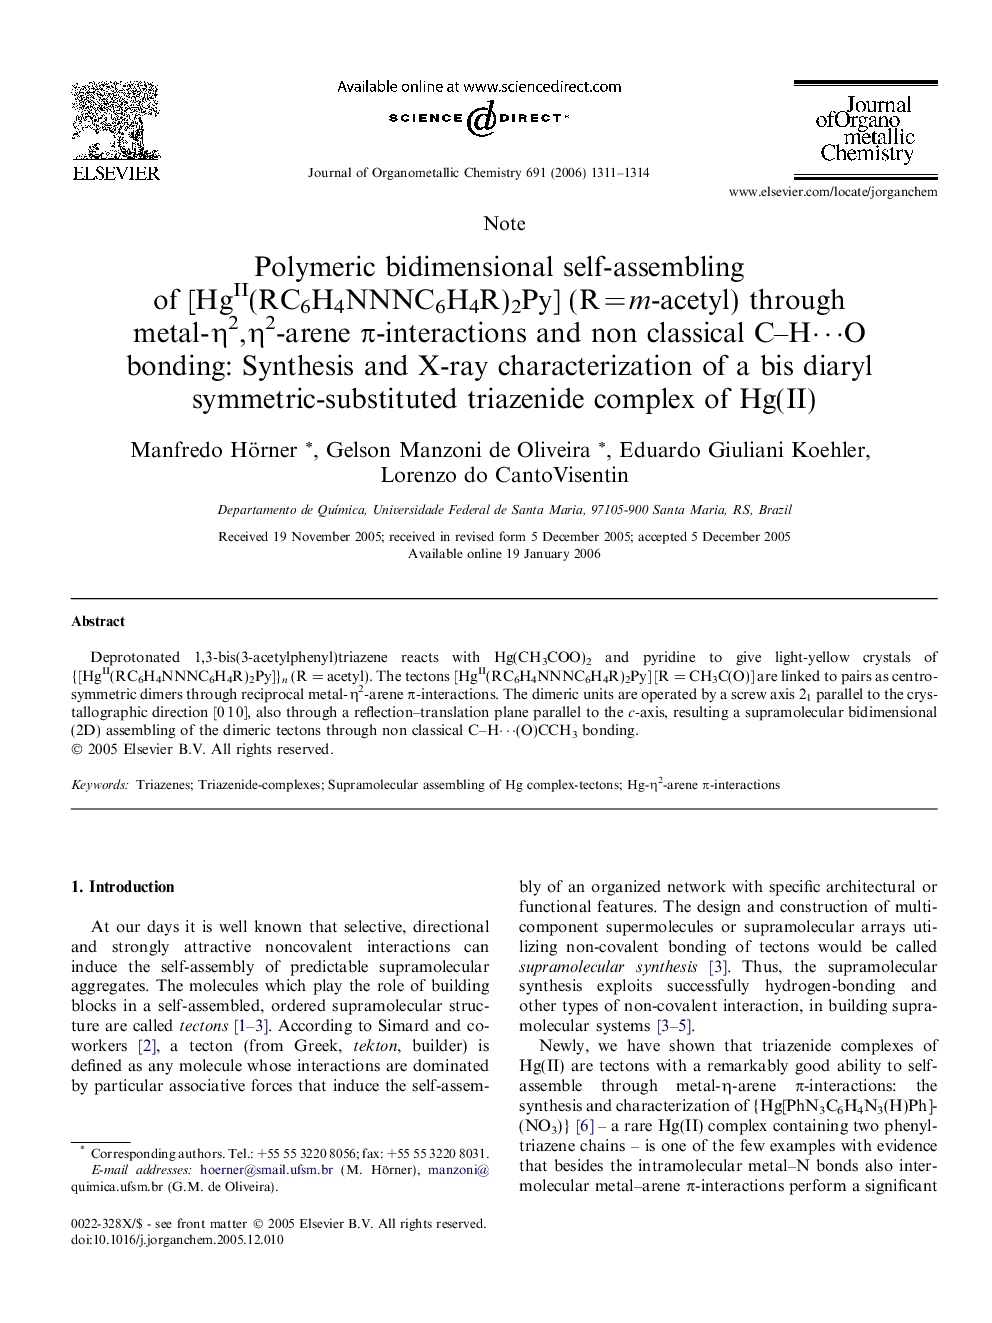 Polymeric bidimensional self-assembling of [HgII(RC6H4NNNC6H4R)2Py] (RÂ =Â m-acetyl) through metal-Î·2,Î·2-arene Ï-interactions and non classical C-Hâ¯O bonding: Synthesis and X-ray characterization of a bis diaryl symmetric-substituted triazenide compl